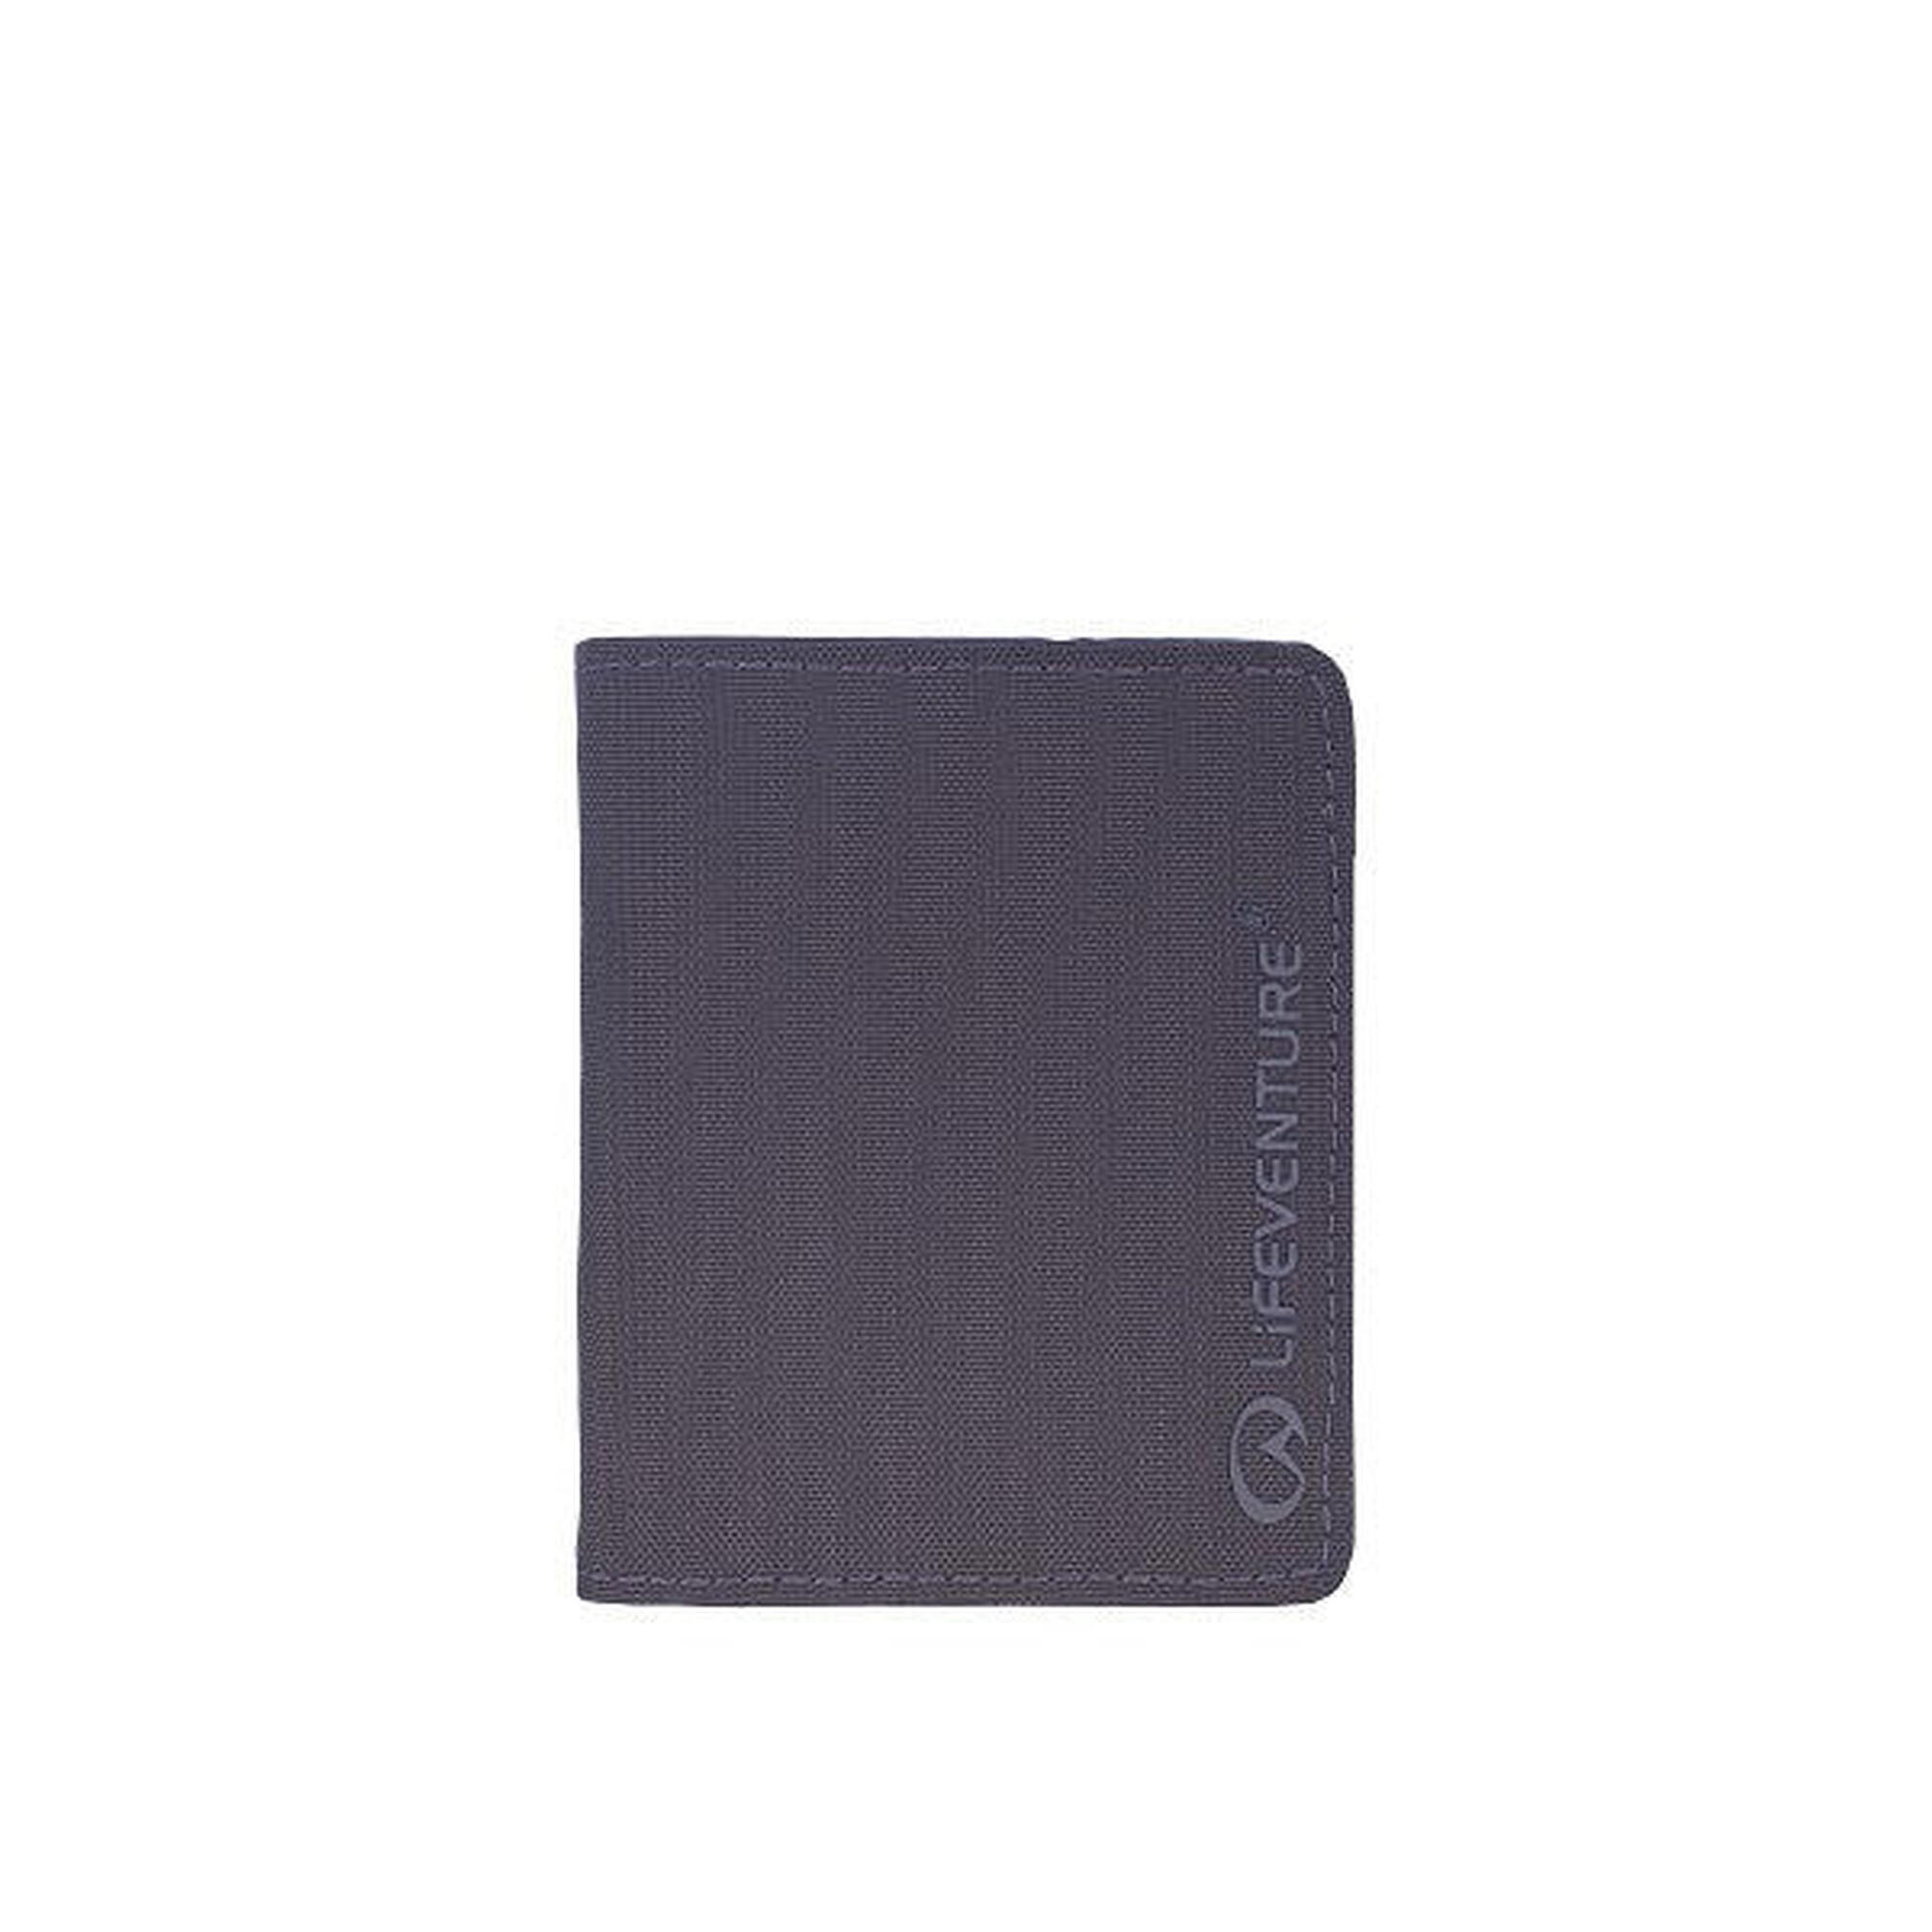 環保防盜RFID卡錢包(6卡插槽) - 藍色